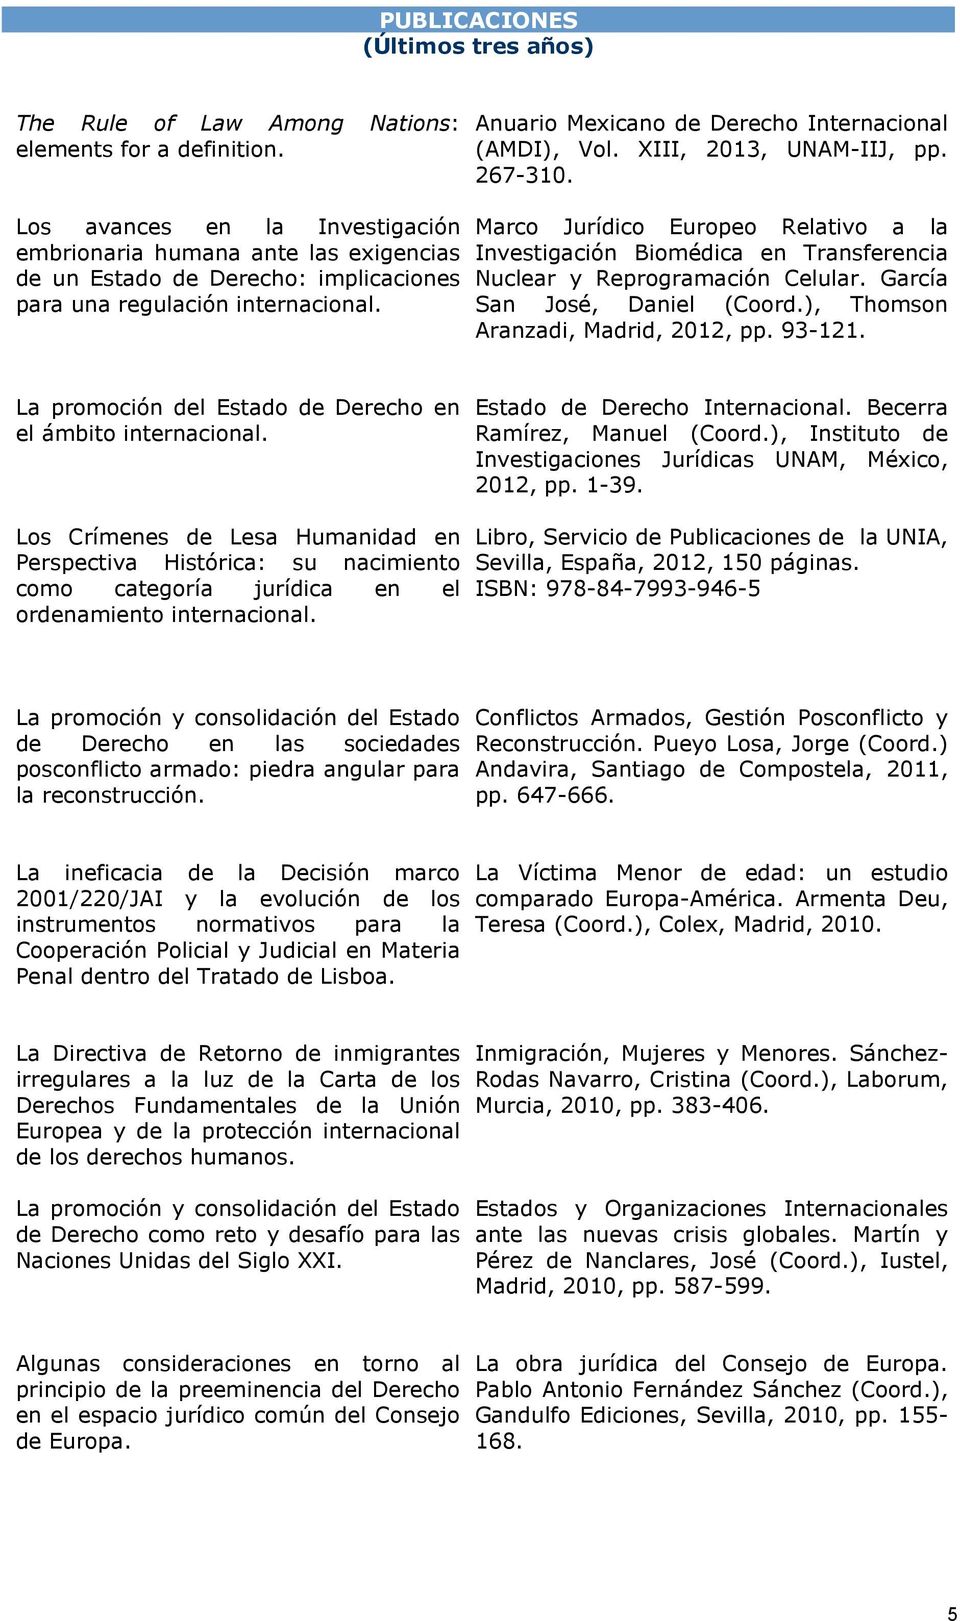 Marco Jurídico Europeo Relativo a la Investigación Biomédica en Transferencia Nuclear y Reprogramación Celular. García San José, Daniel (Coord.), Thomson Aranzadi, Madrid, 2012, pp. 93-121.